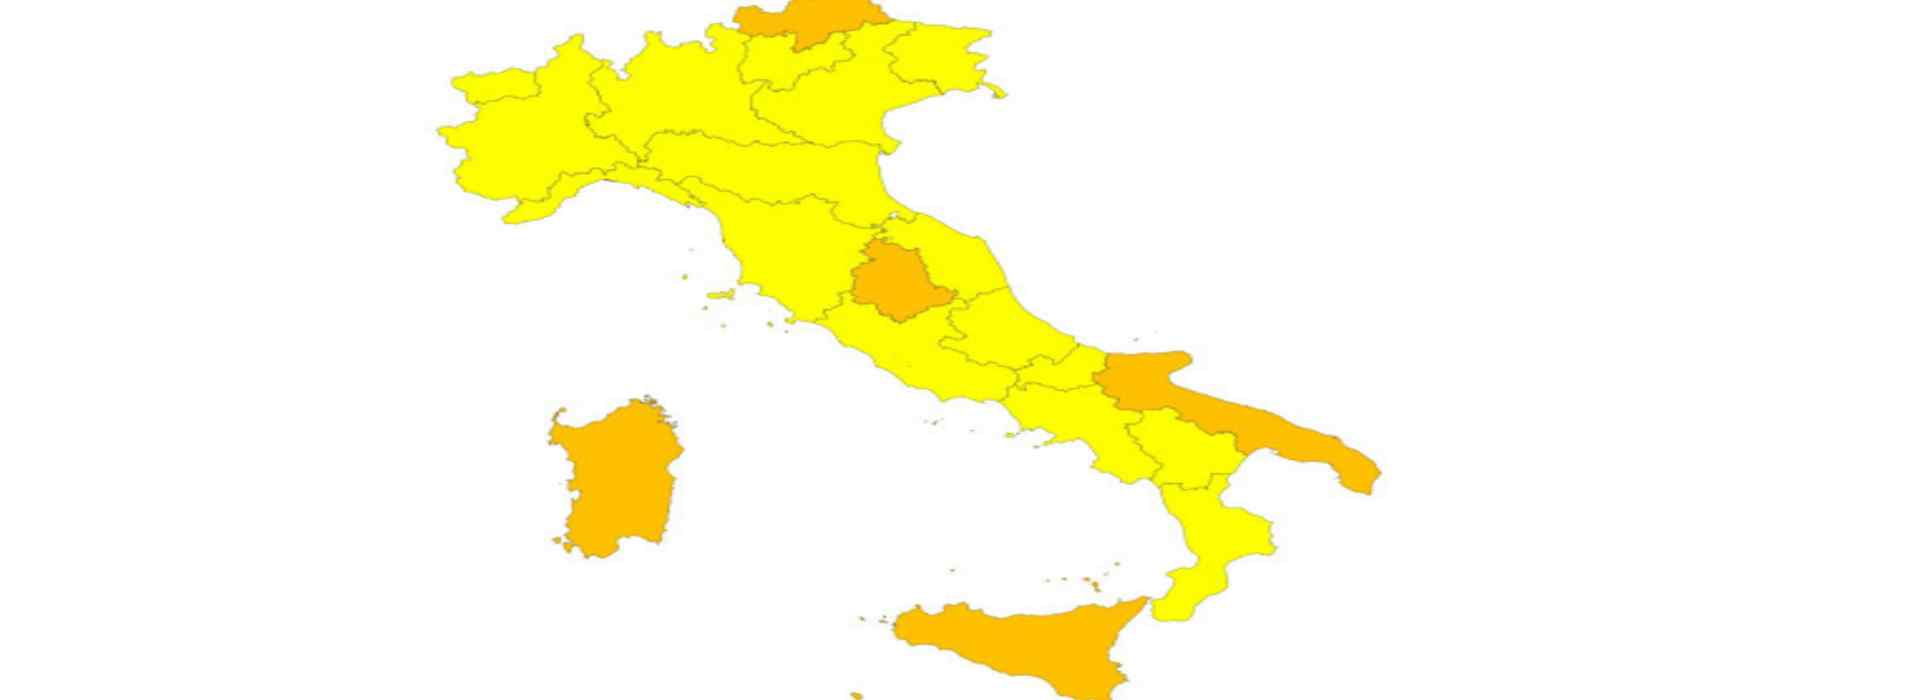 Italia zona gialla: ecco cosa si può fare nel primo weekend